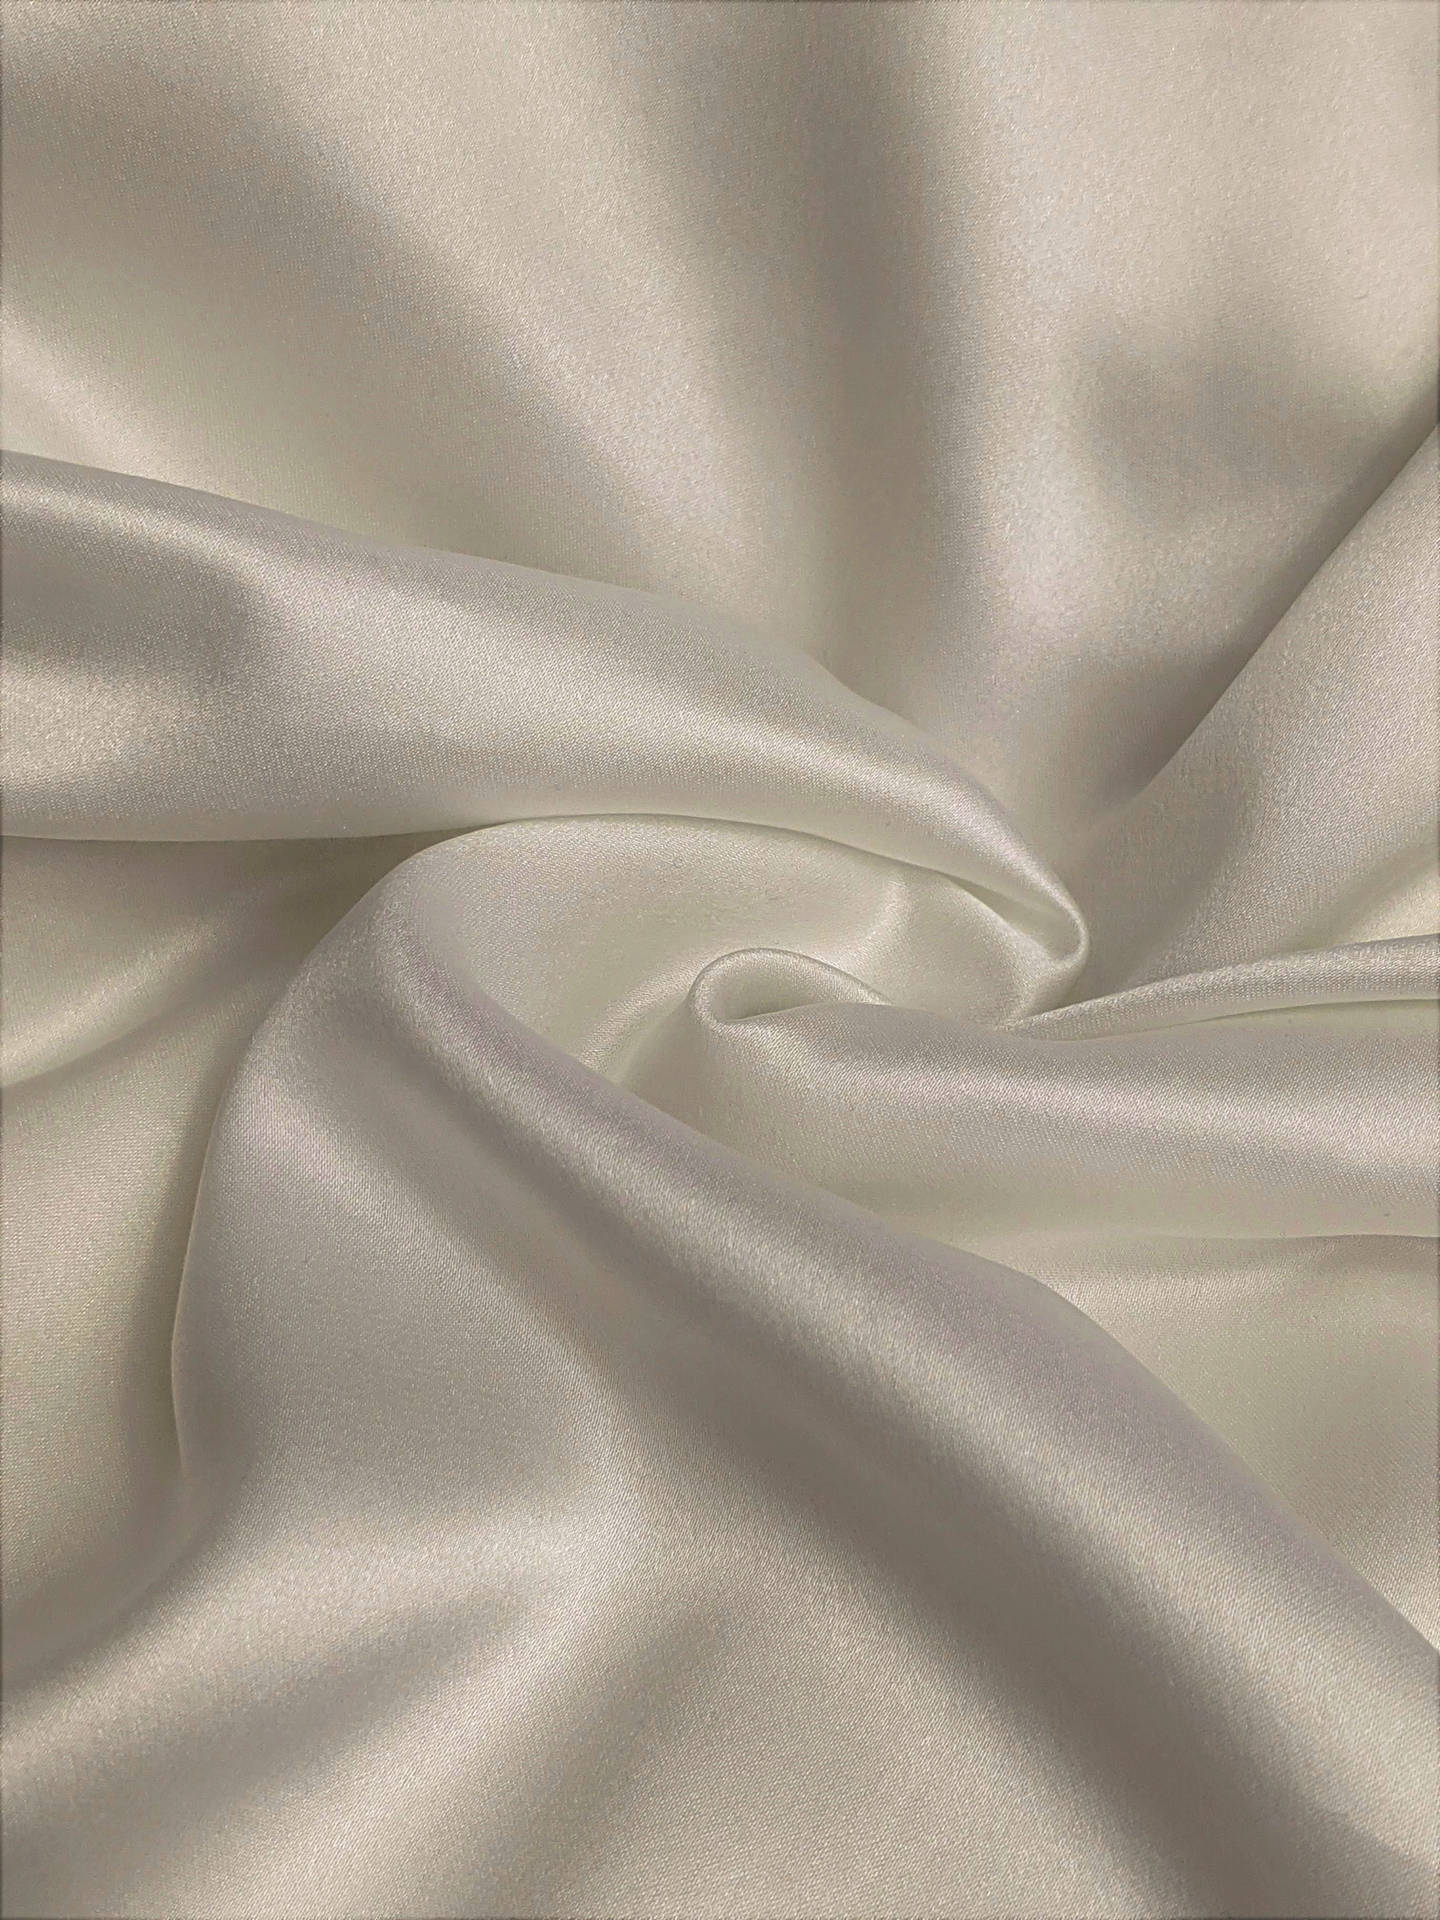 Swirled White Silk Fabric Background